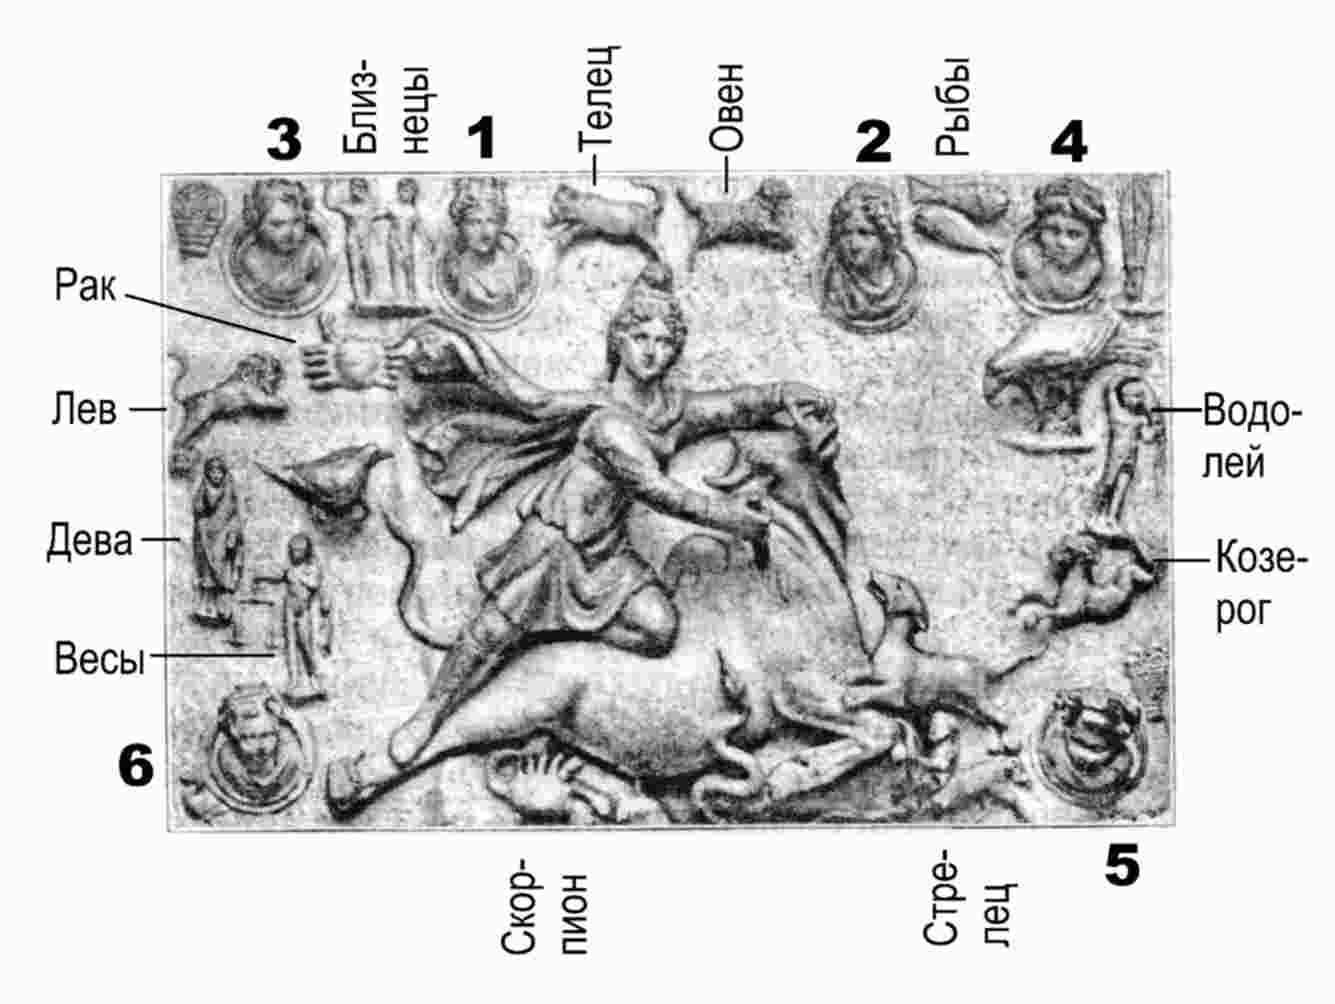 Мужчина весы коза. Старинные изображения знаков зодиака. Древний Зодиак. Знаки зодиака в древности. Знаки зодиака античные.